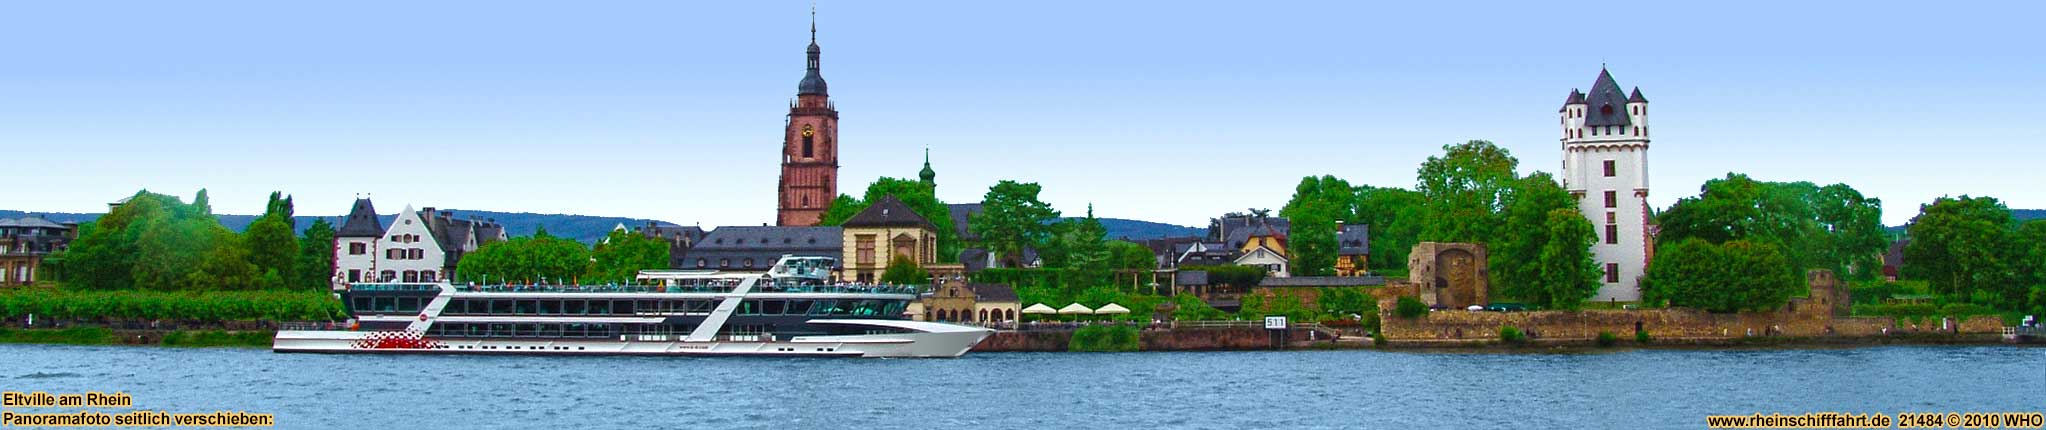 Rheinschifffahrt bei Eltville im Rheingau zwischen Mainz, Wioesbaden, Rdesheim und Bingen